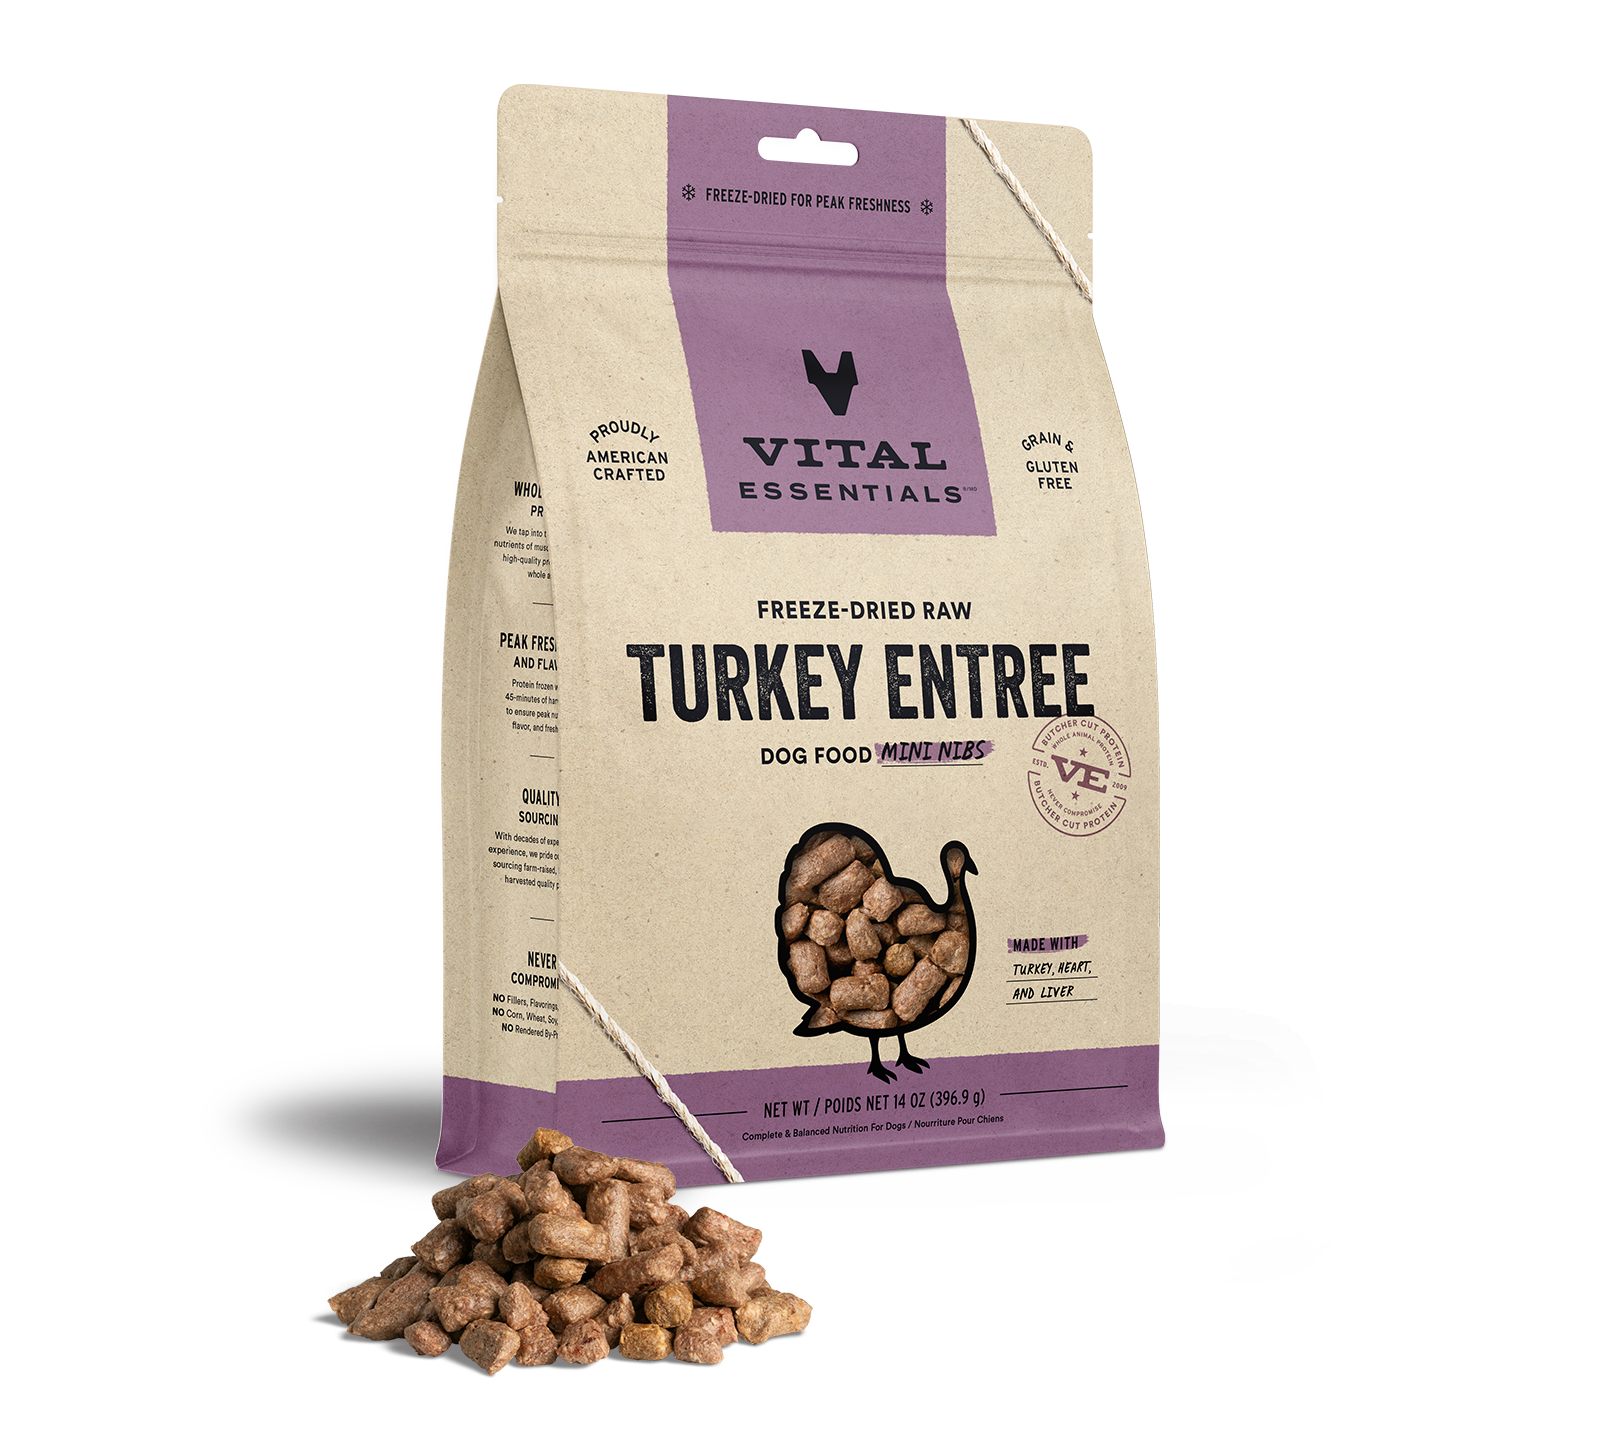 Vital Essentials Freeze-Dried Raw Turkey Entree Dog Food Mini Nibs, 14 oz - Health/First Aid